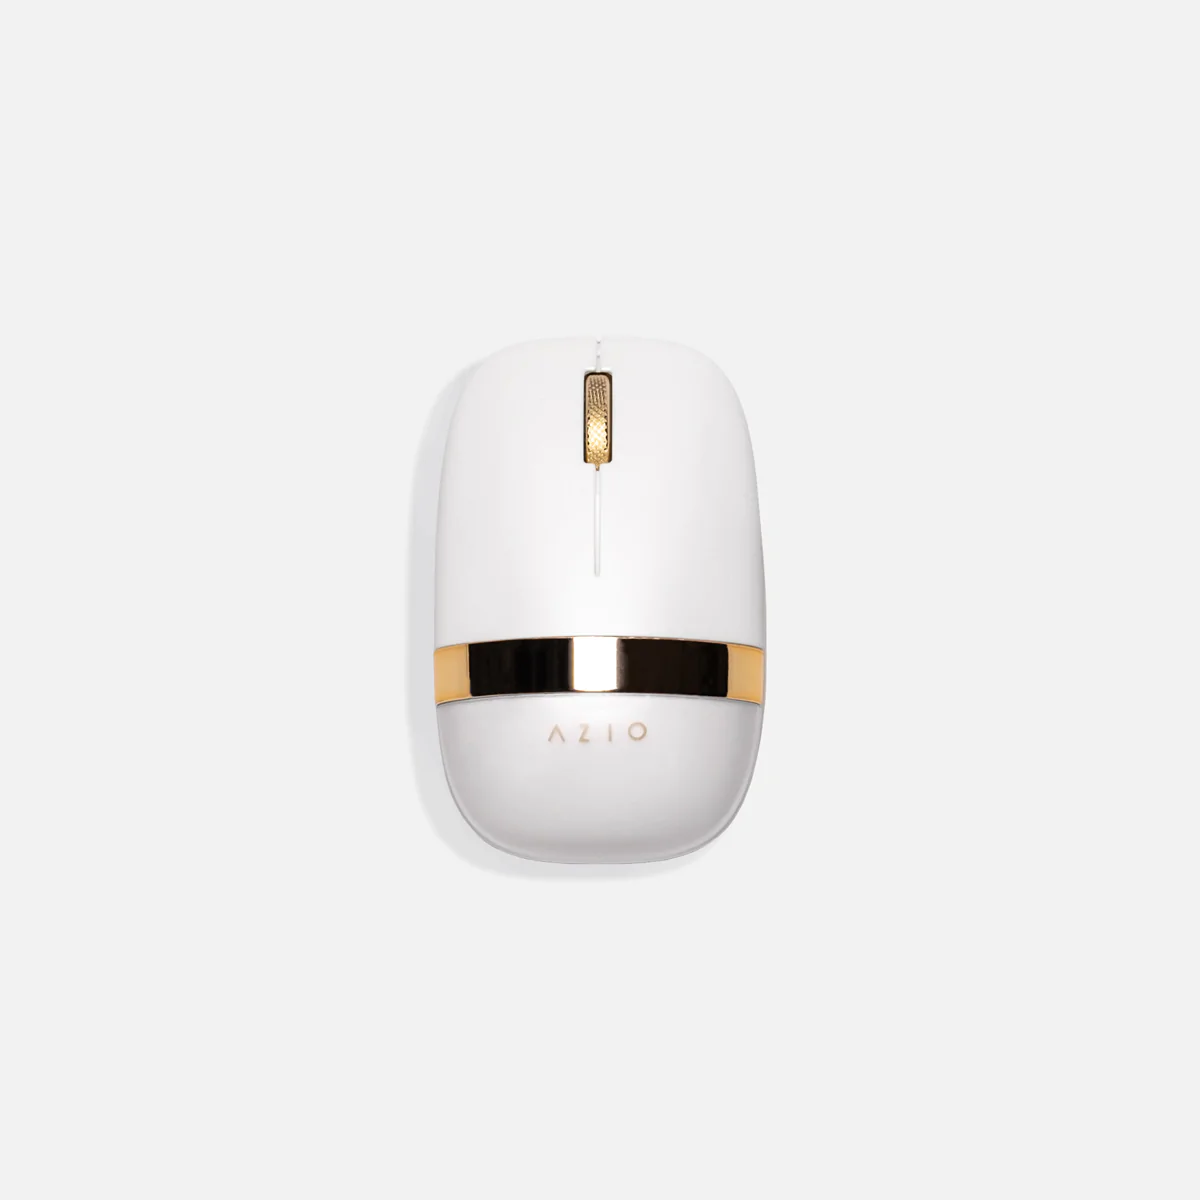 Azio IZO Wireless Mouse-Addice Inc